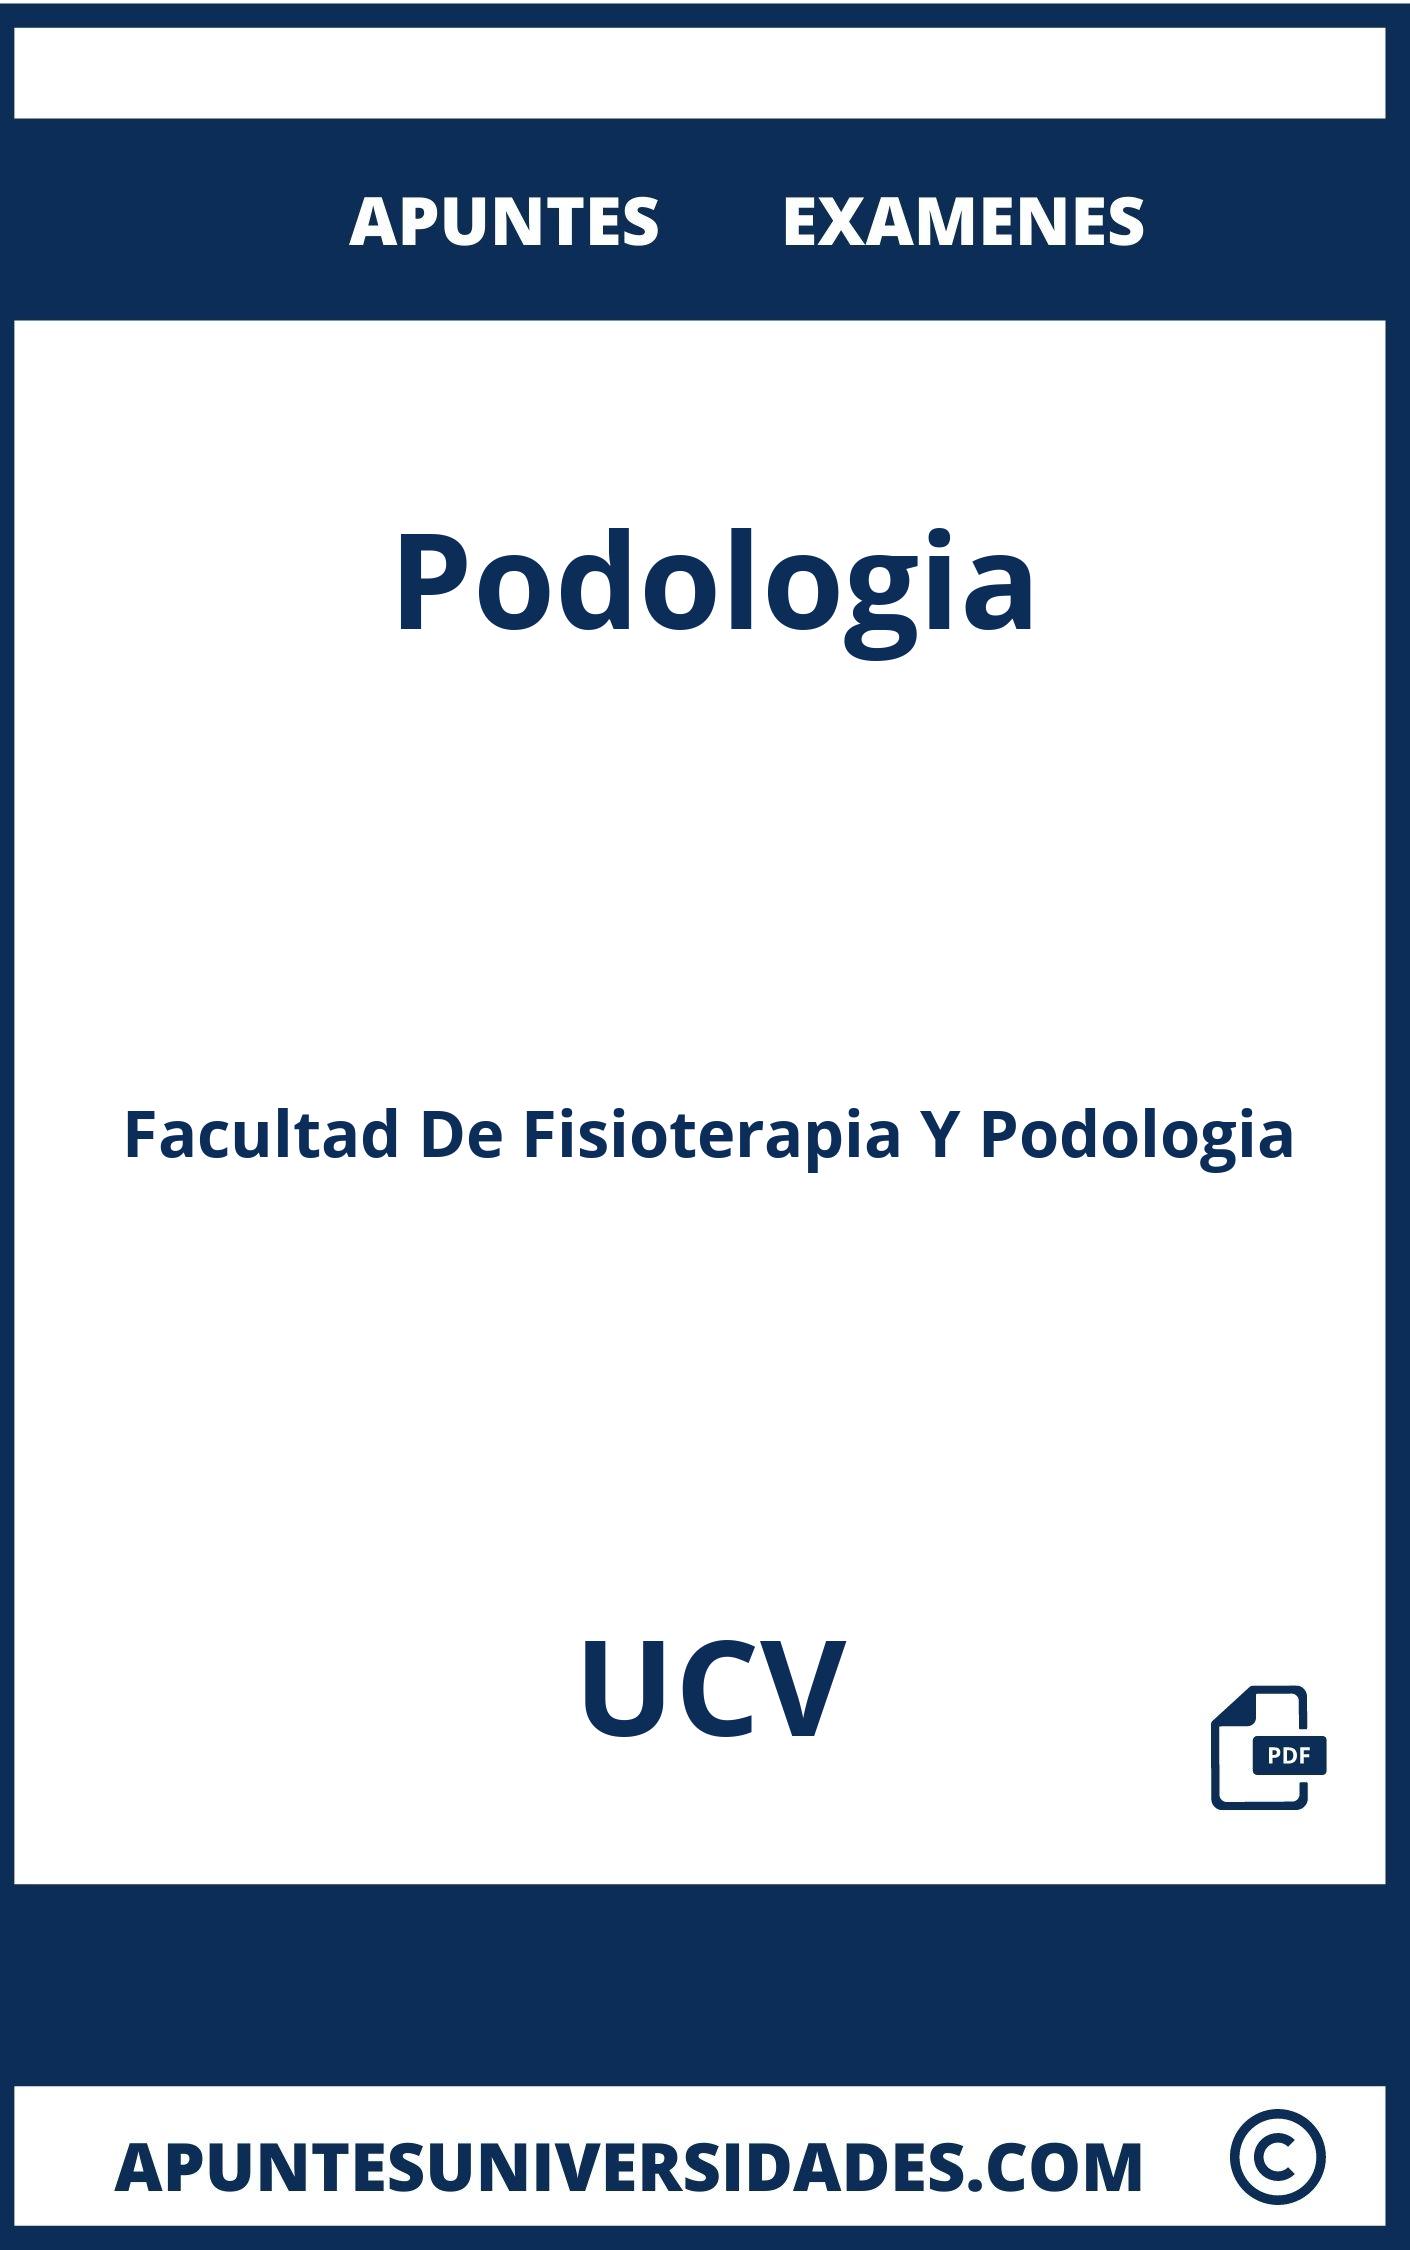 Examenes Apuntes Podologia UCV